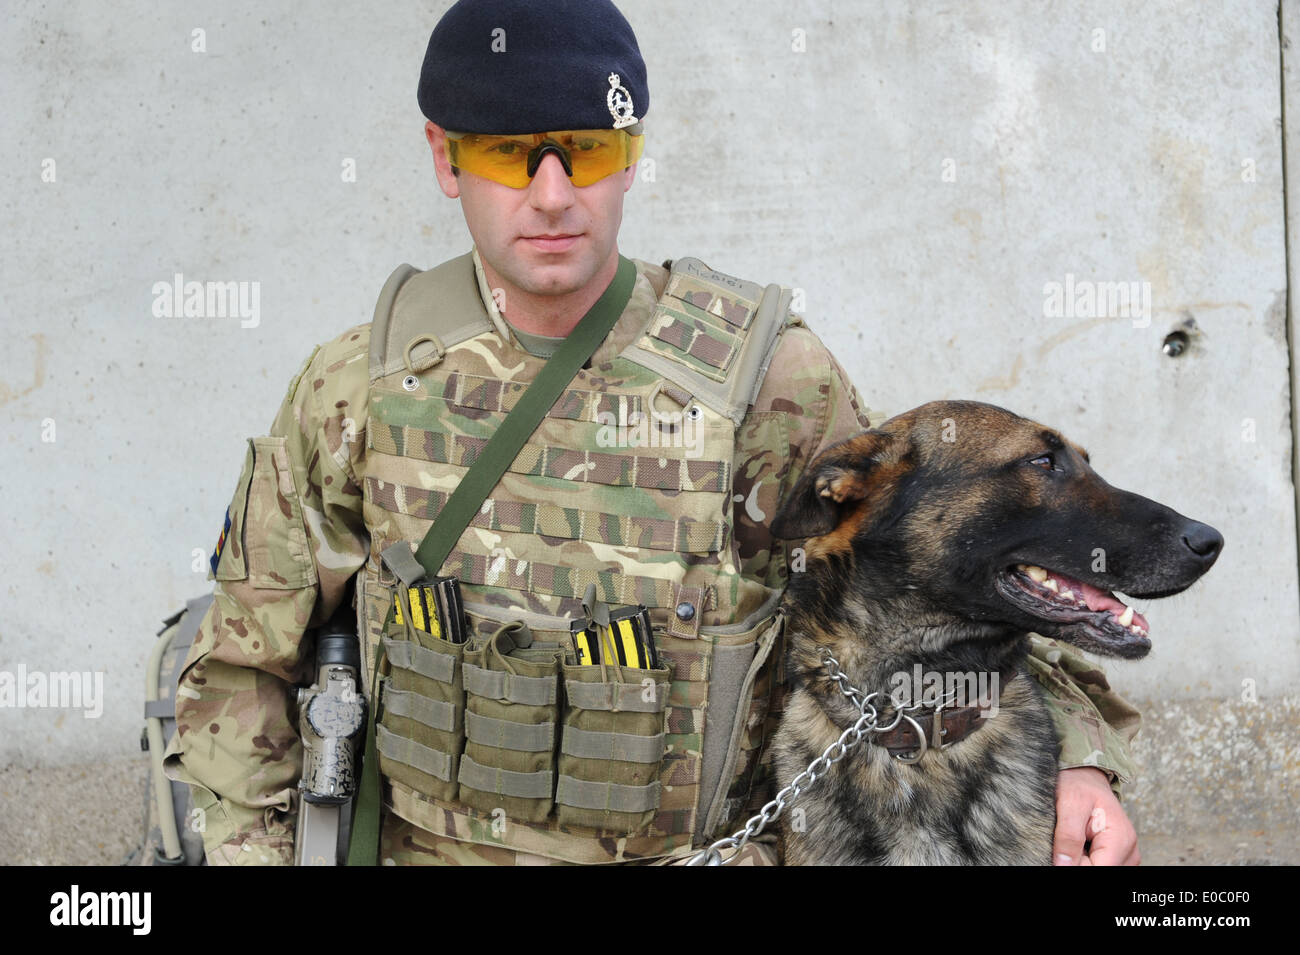 t militärische Working Dog Hund Zähler Aufstand Ied improvisierten Sprengkörpern Suche Afghanistan bewachen Hund Sicherheit Stockfoto